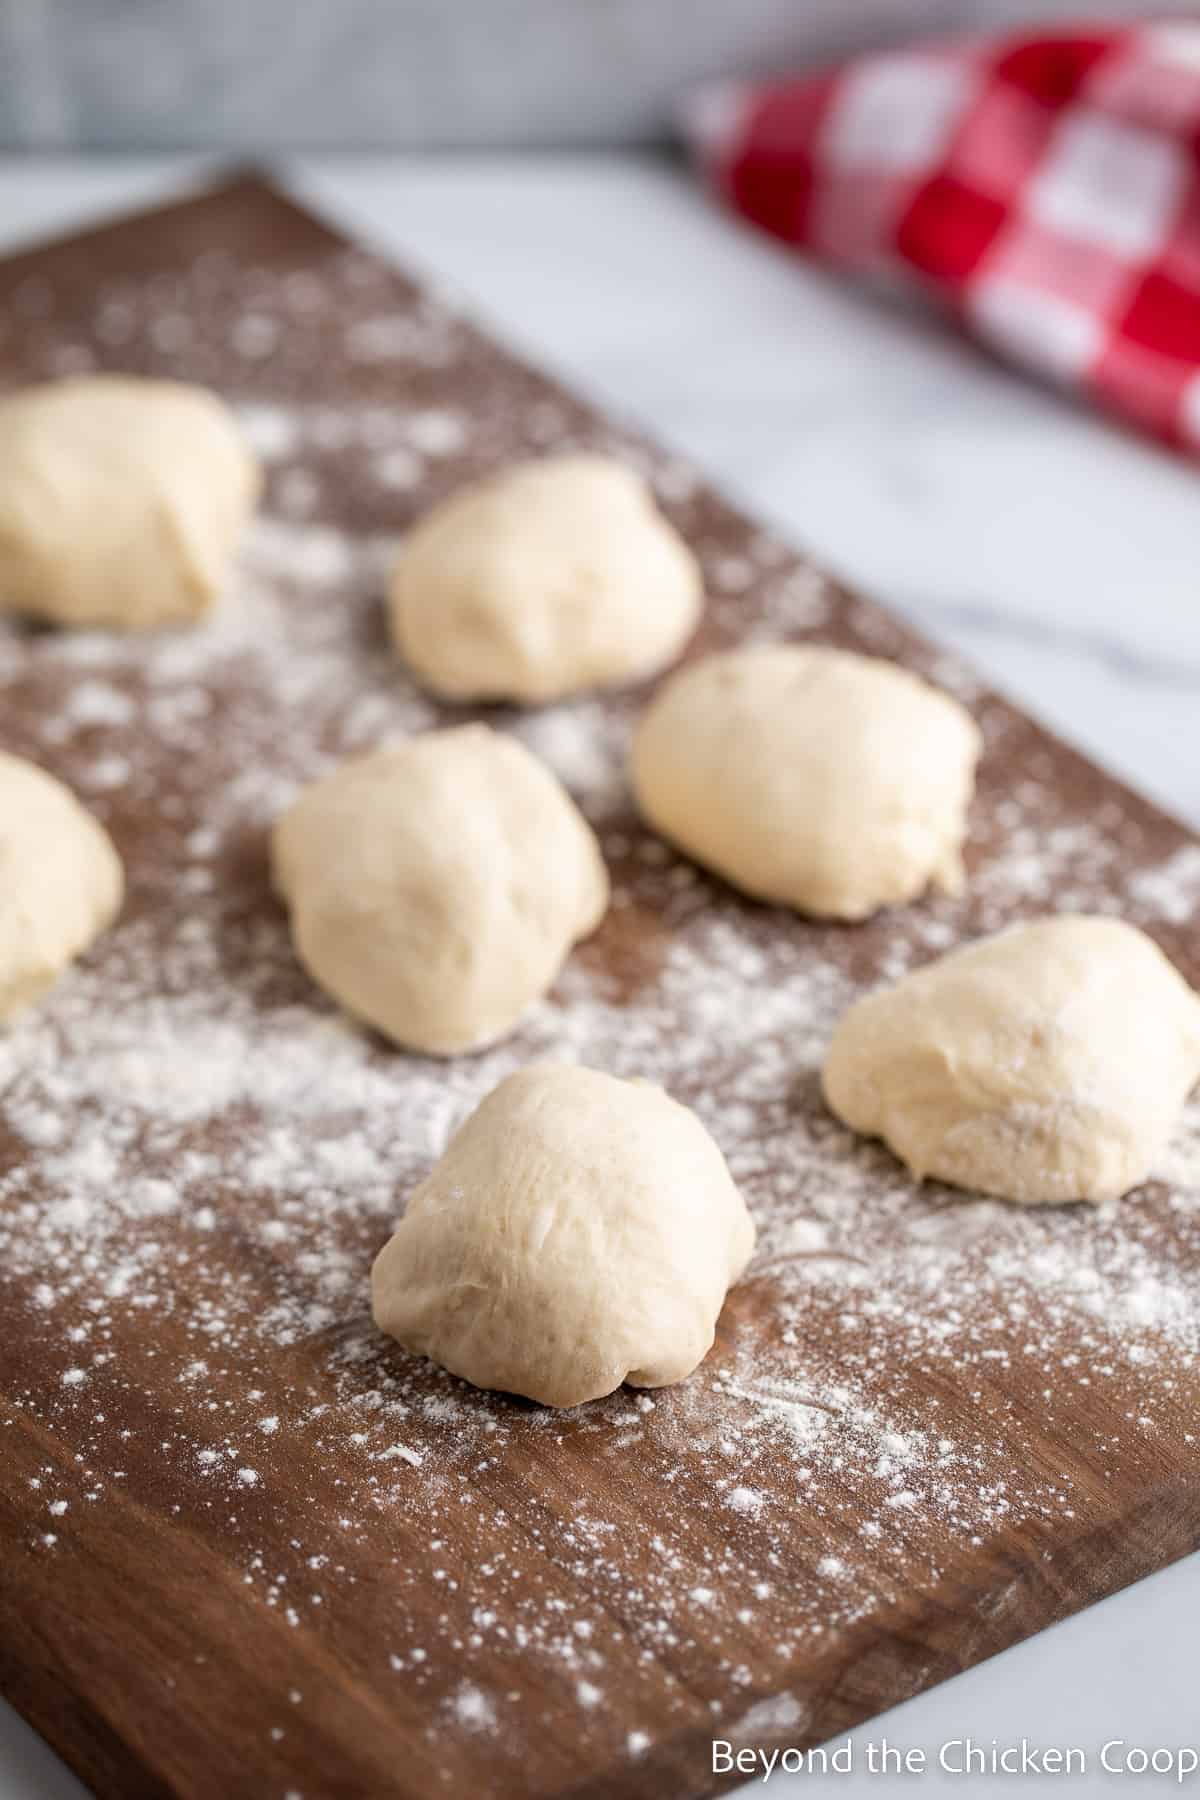 Bread dough divided into small balls. 